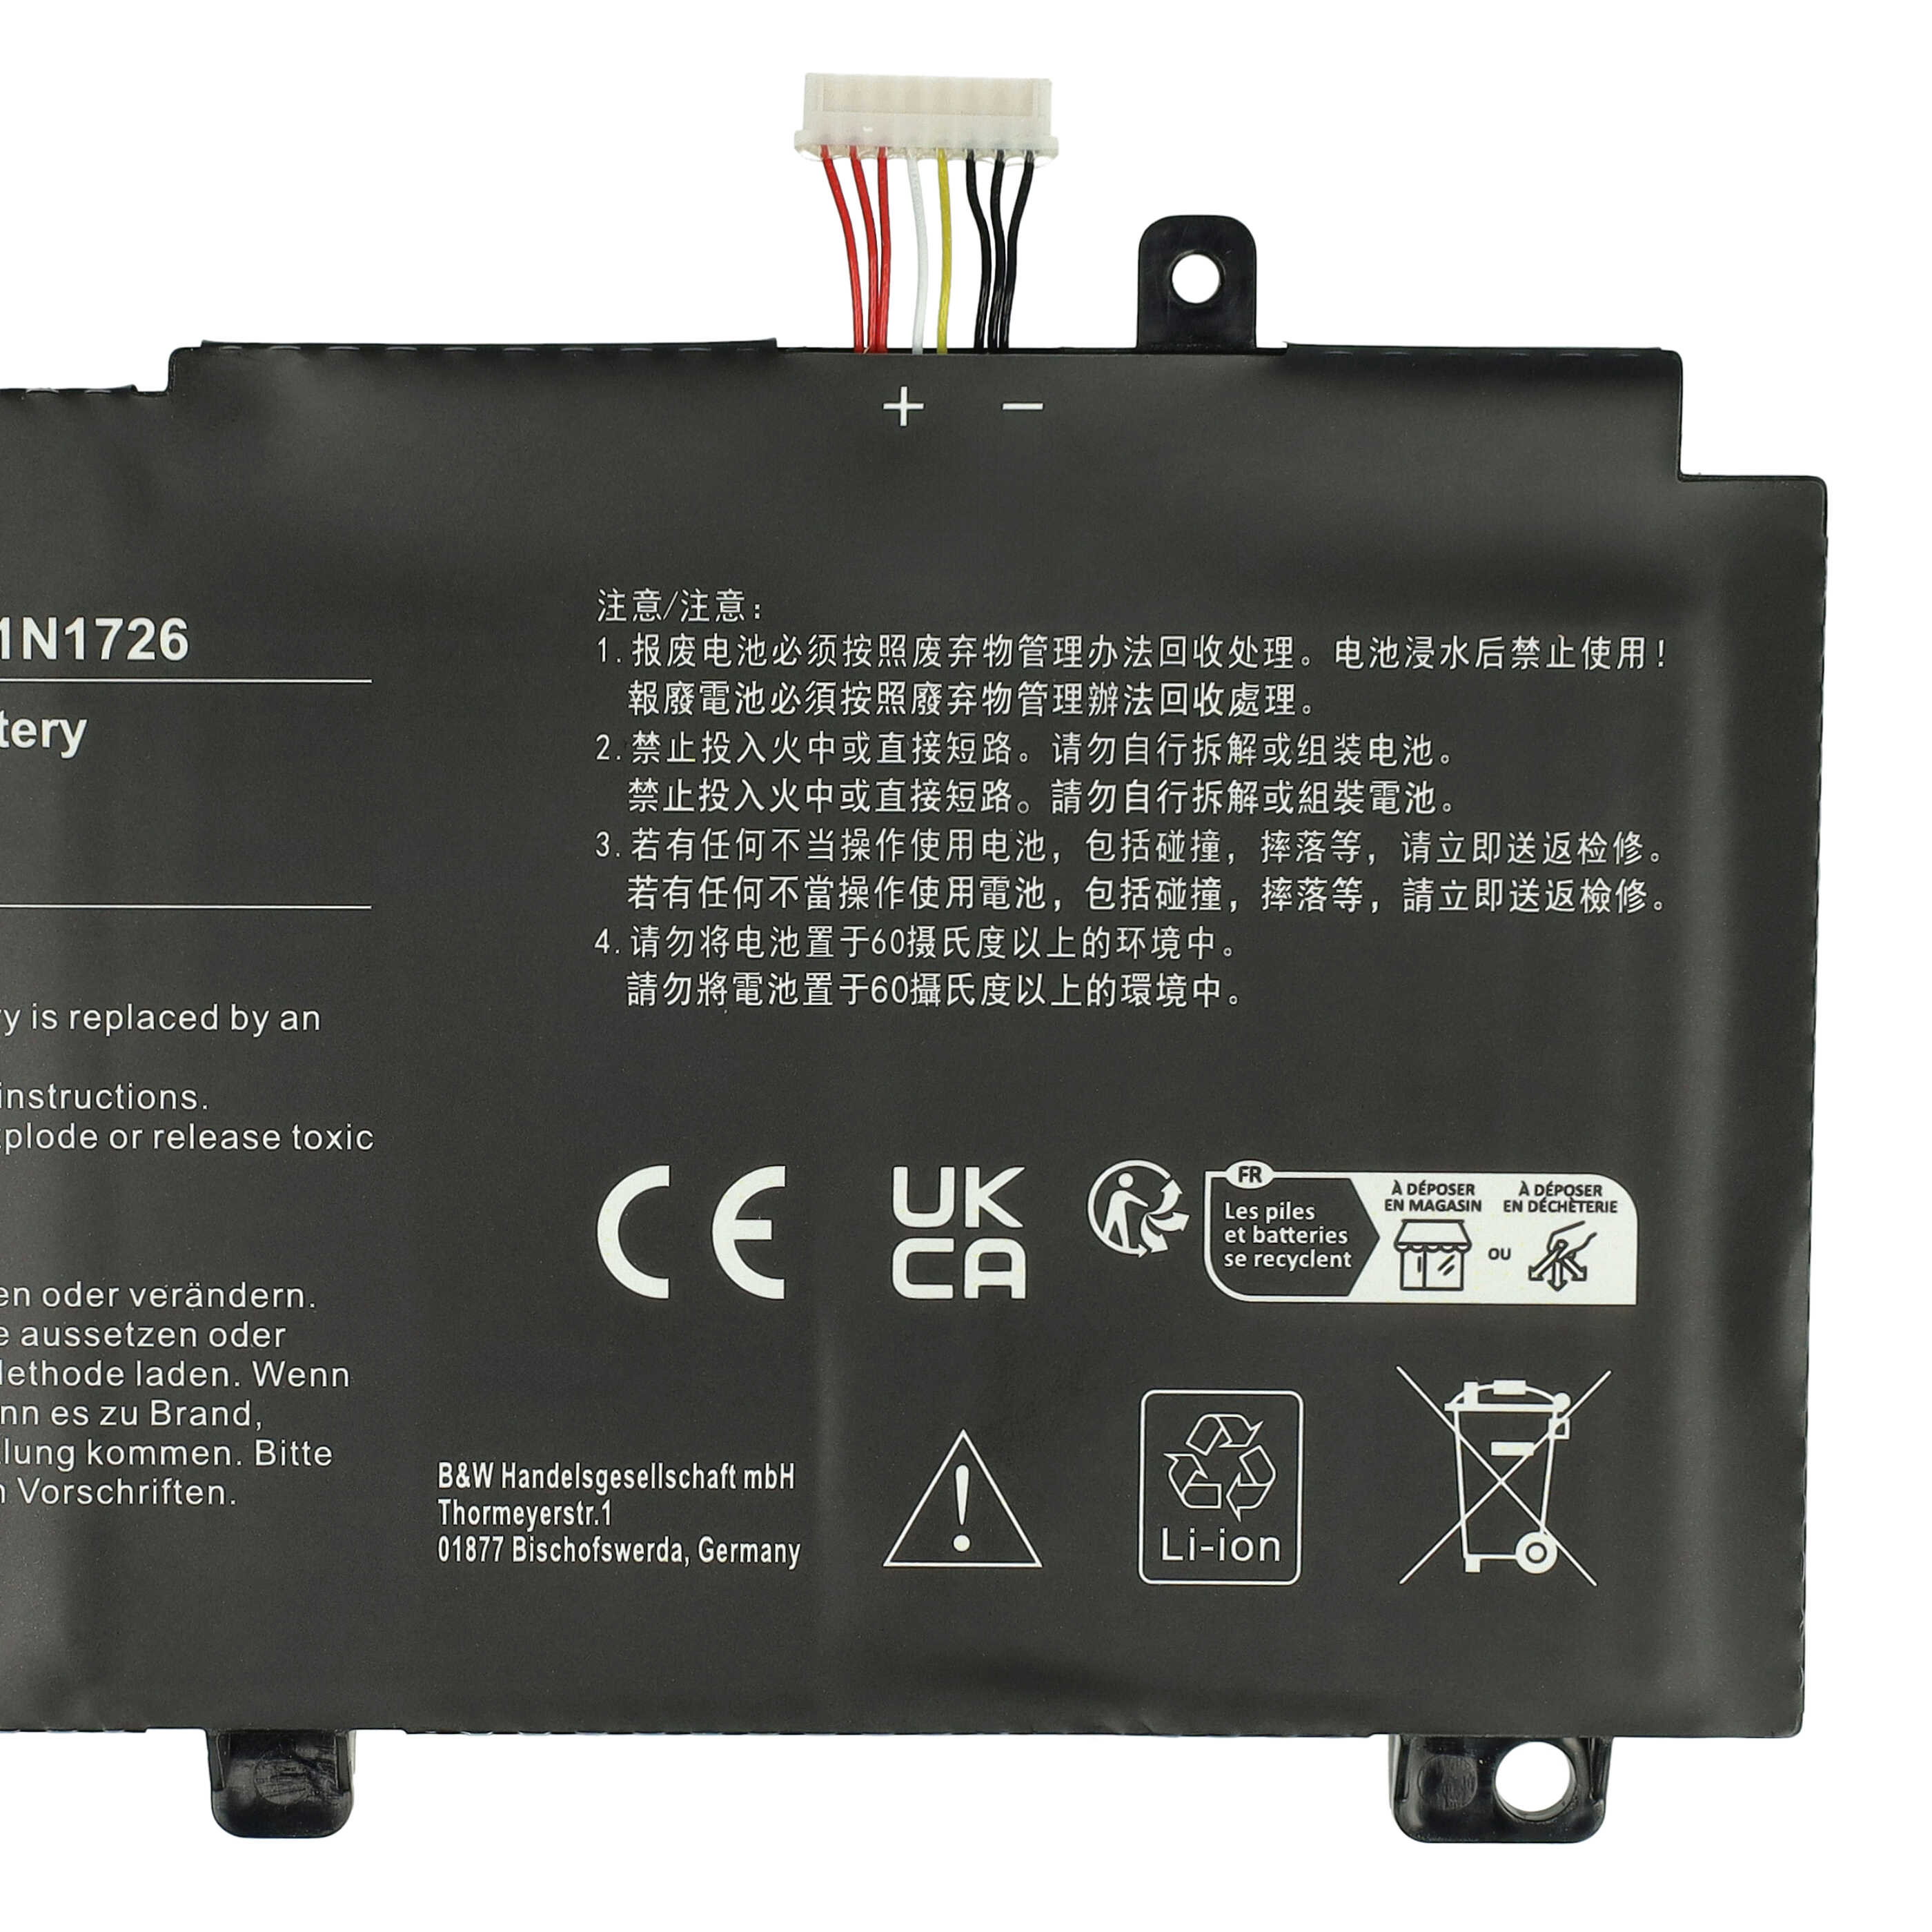 Akumulator do laptopa zamiennik Asus A41LK9H, 3ICP7/60/80, 0B200-02910000 - 4100 mAh 11,1 V LiPo, czarny